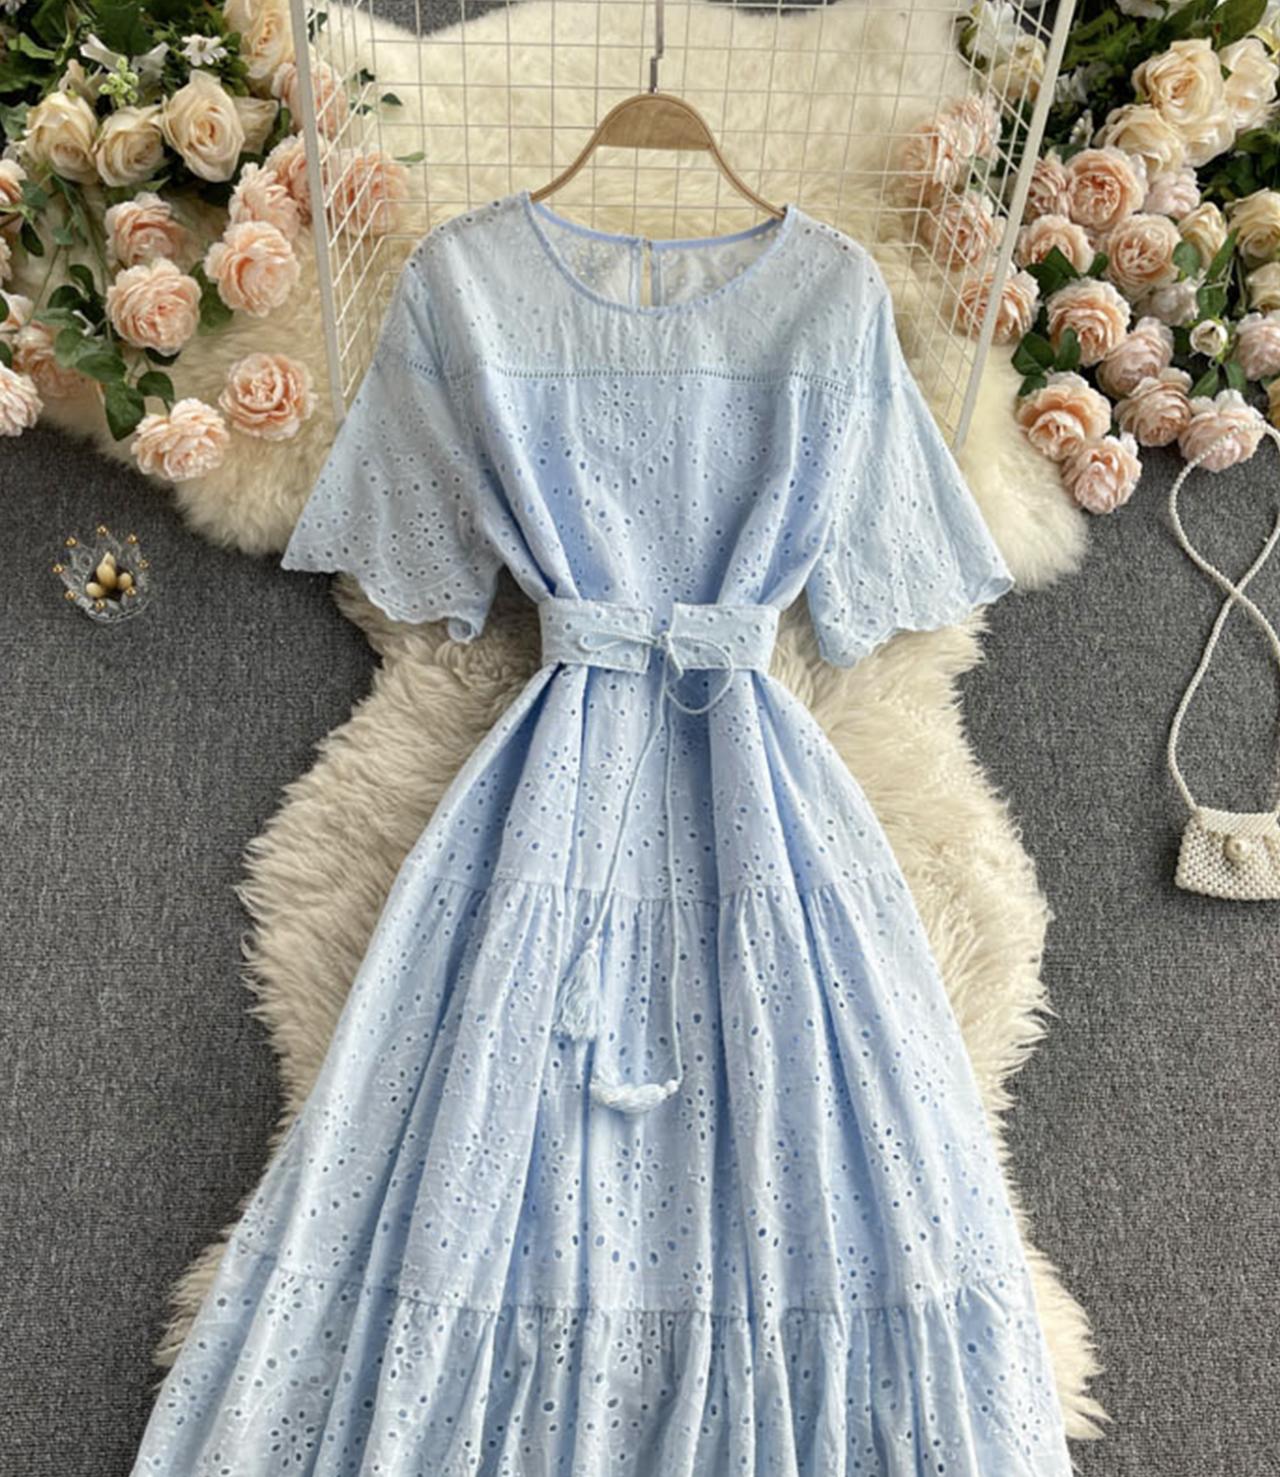 Süßes kurzes Kleid in A-Linie Modekleid 719